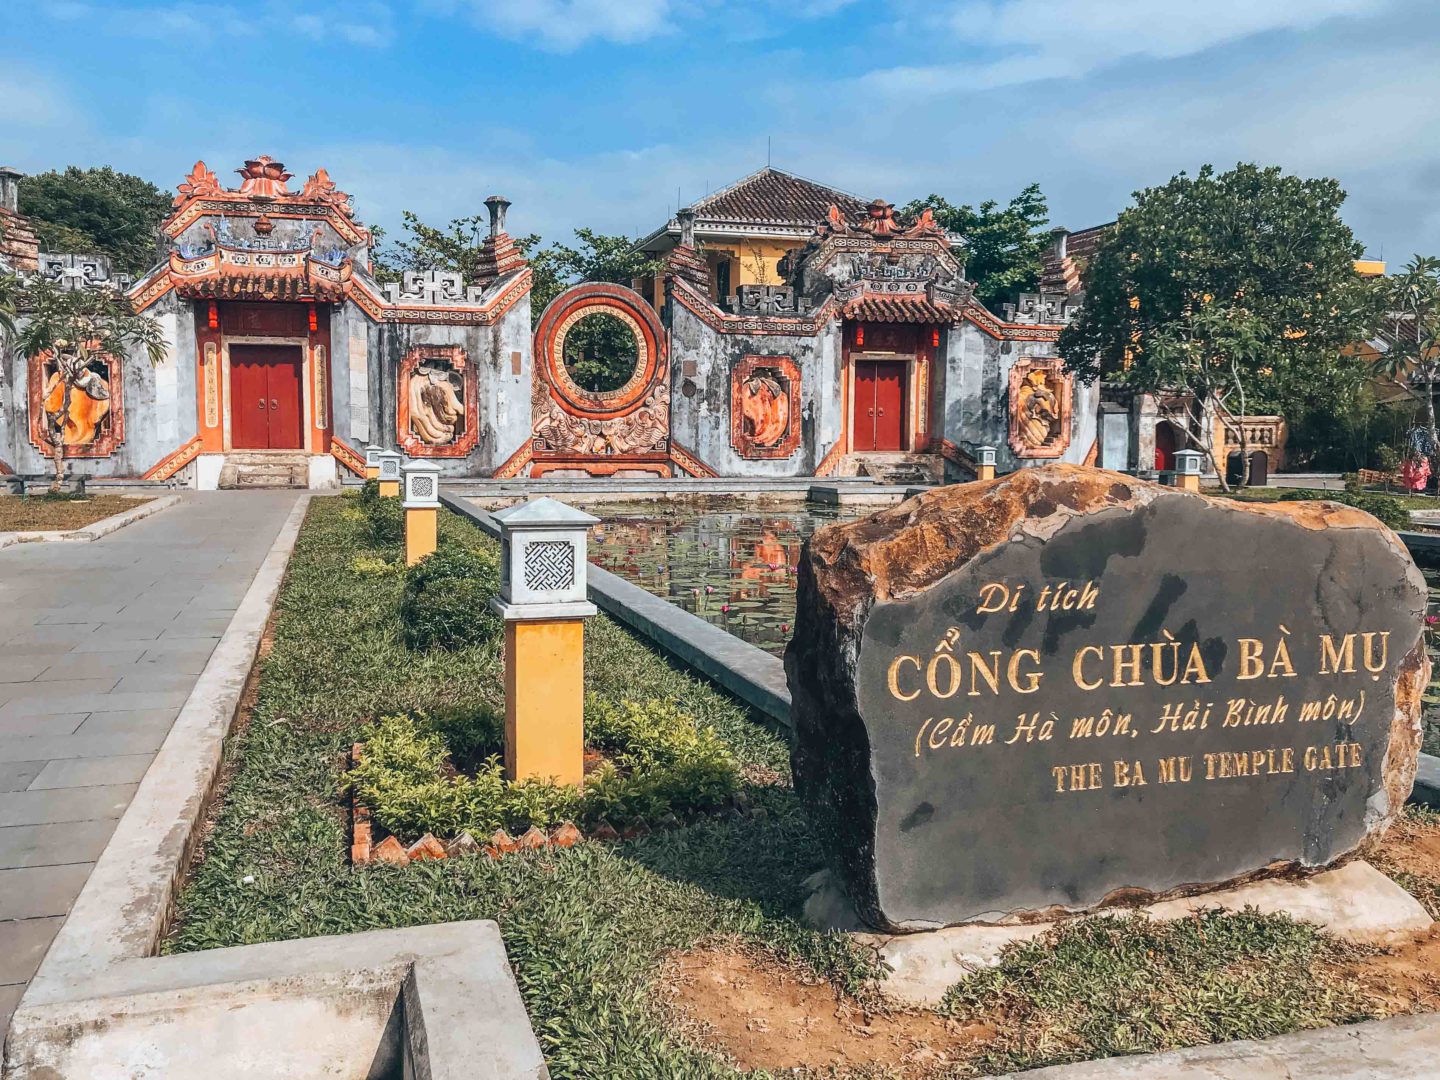 Cong Chua ba Mu, the temple gate in Hoi An, Vietnam